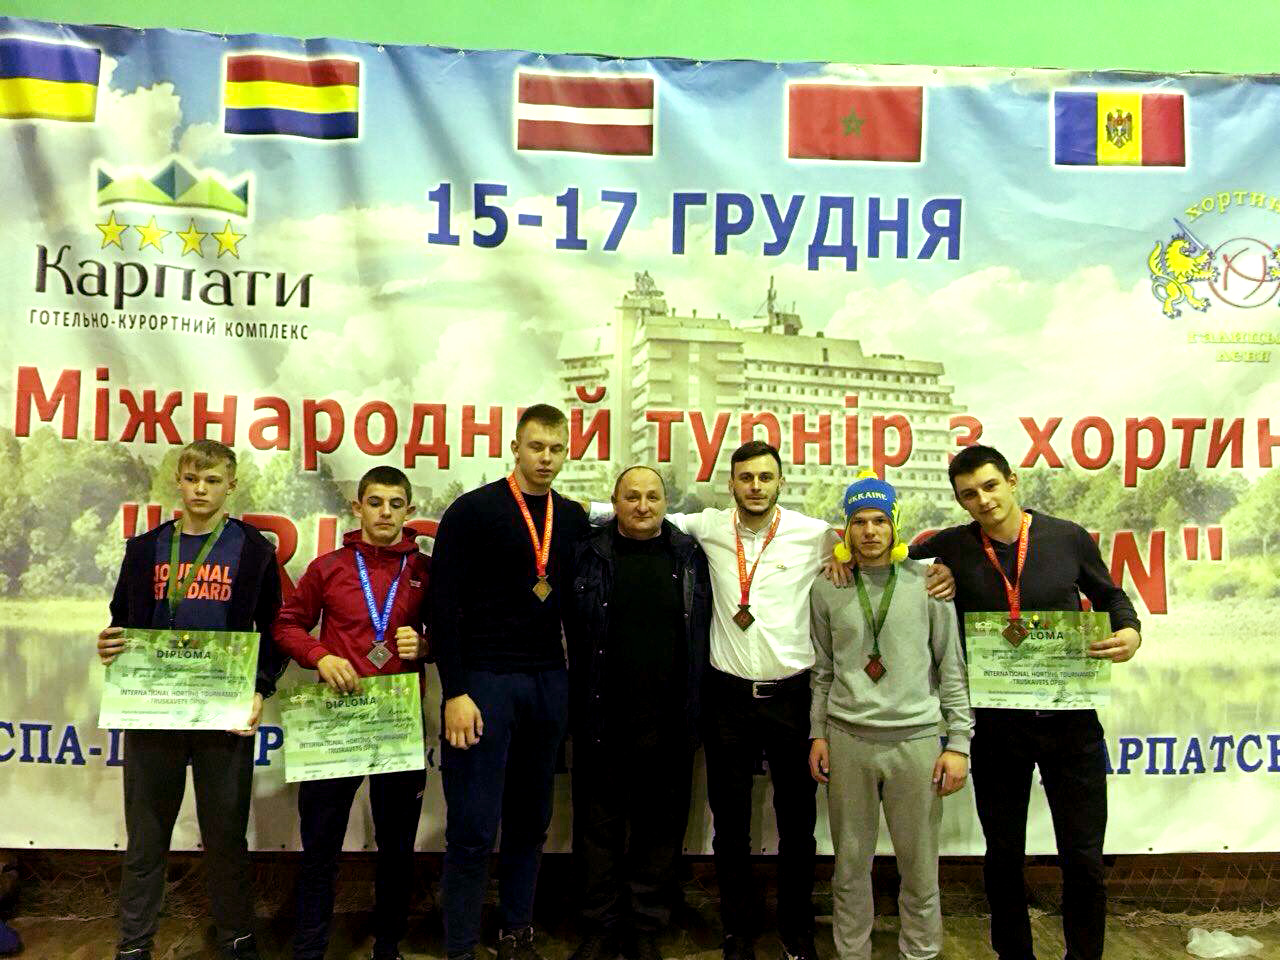 Закарпатські хортингісти привезли з міжнародного турніру нагороди